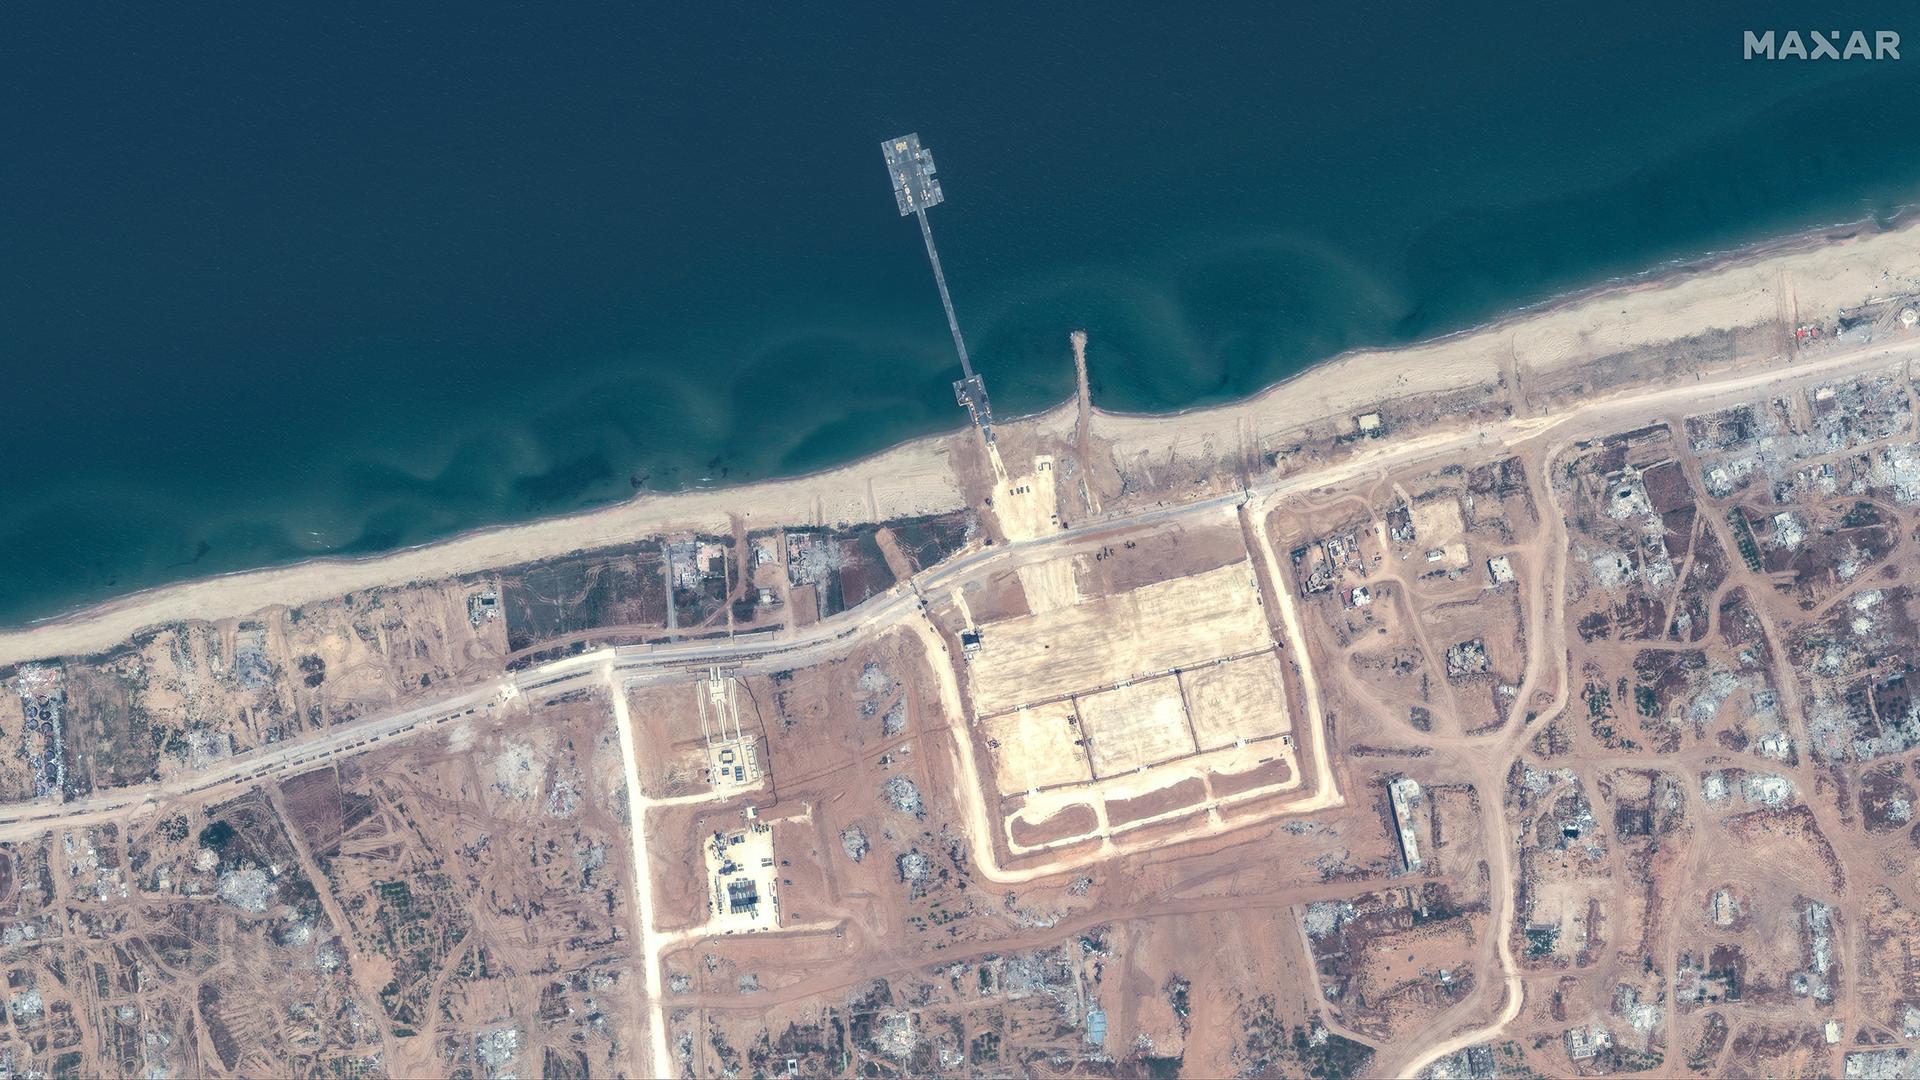 Ein Satellitenbild eines Küstenabschnitts des Gazastreifens, von dem ein Pier ins Mittelmeer ragt.